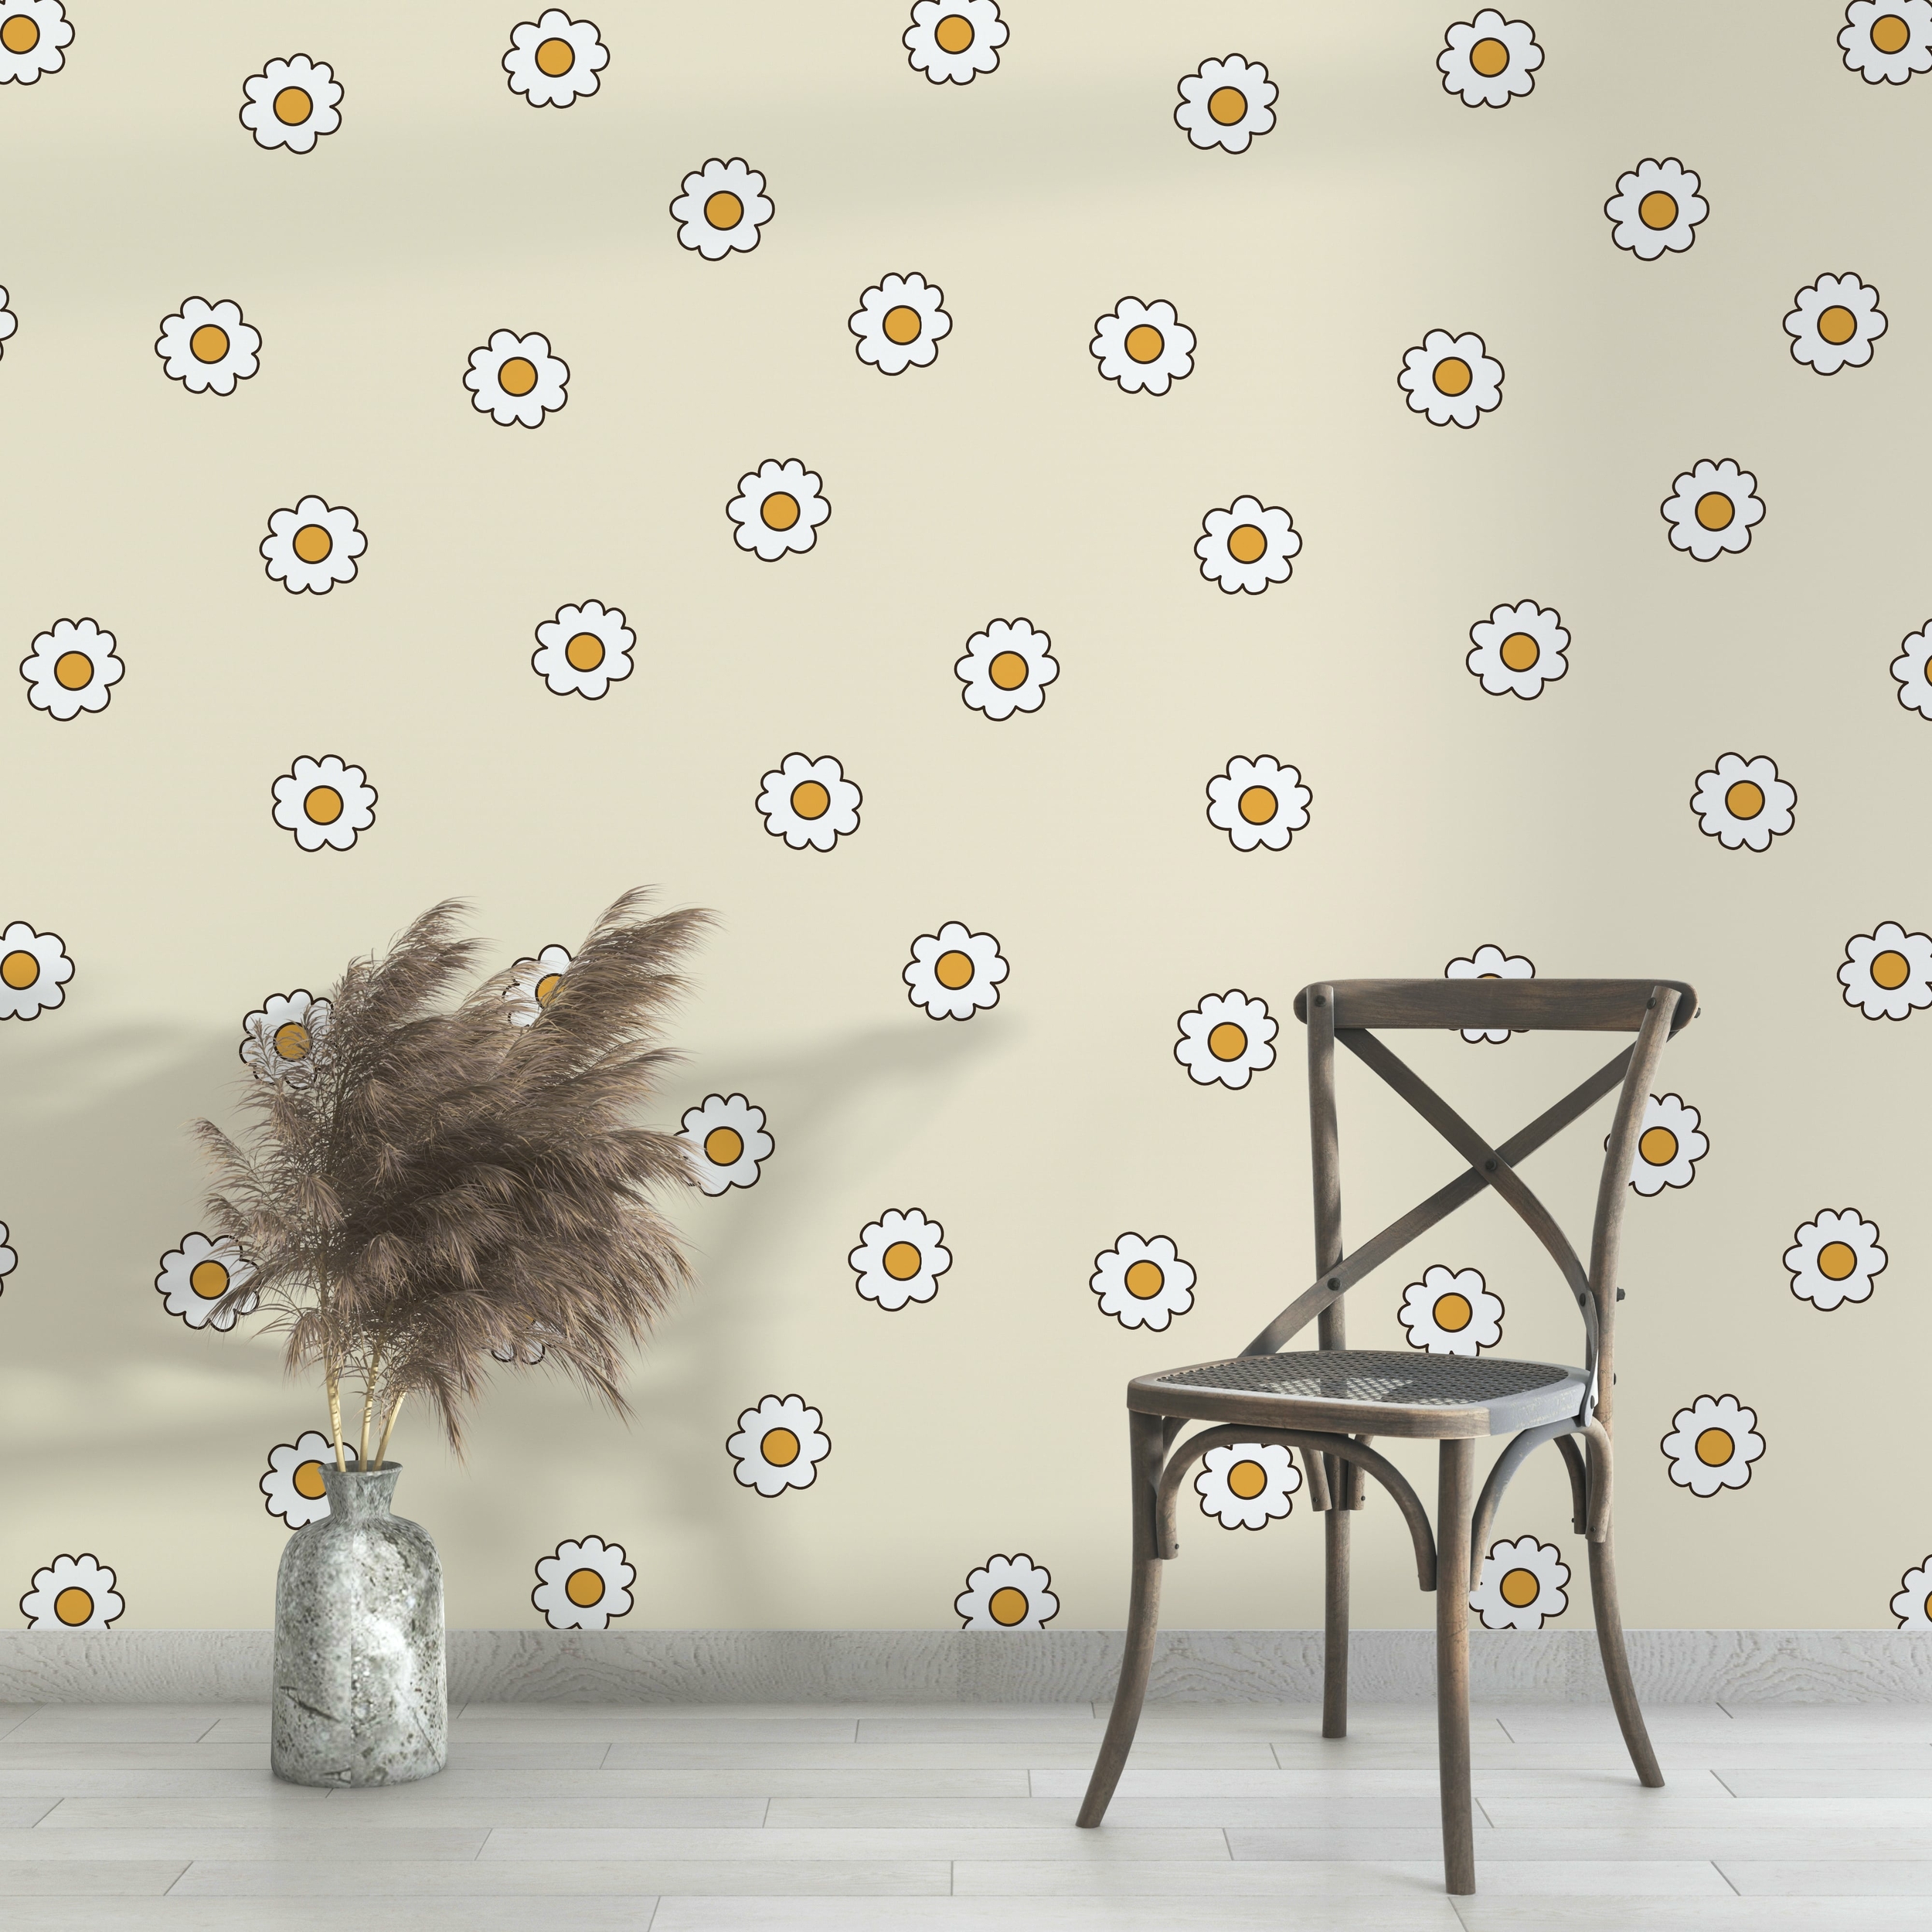 PP109-mur-papier-peint-adhesif-decoratif-revetement-vinyle-motifs-marguerite-fond-beige-renovation-meuble-mur-min